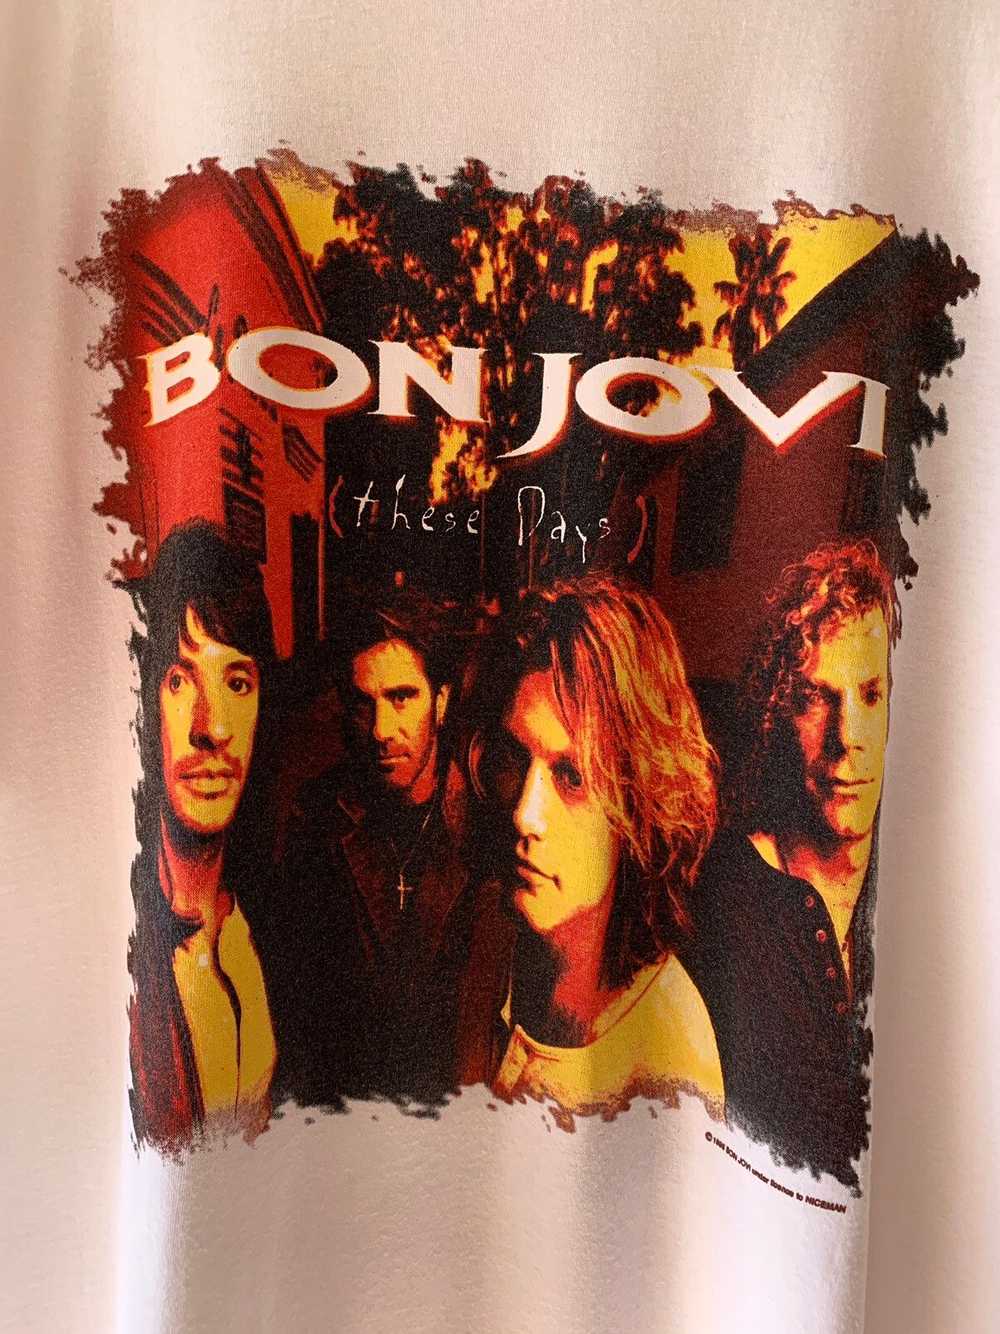 Bon Jovi © 1996 BON JOVI “These Days” T-Shirt - image 2